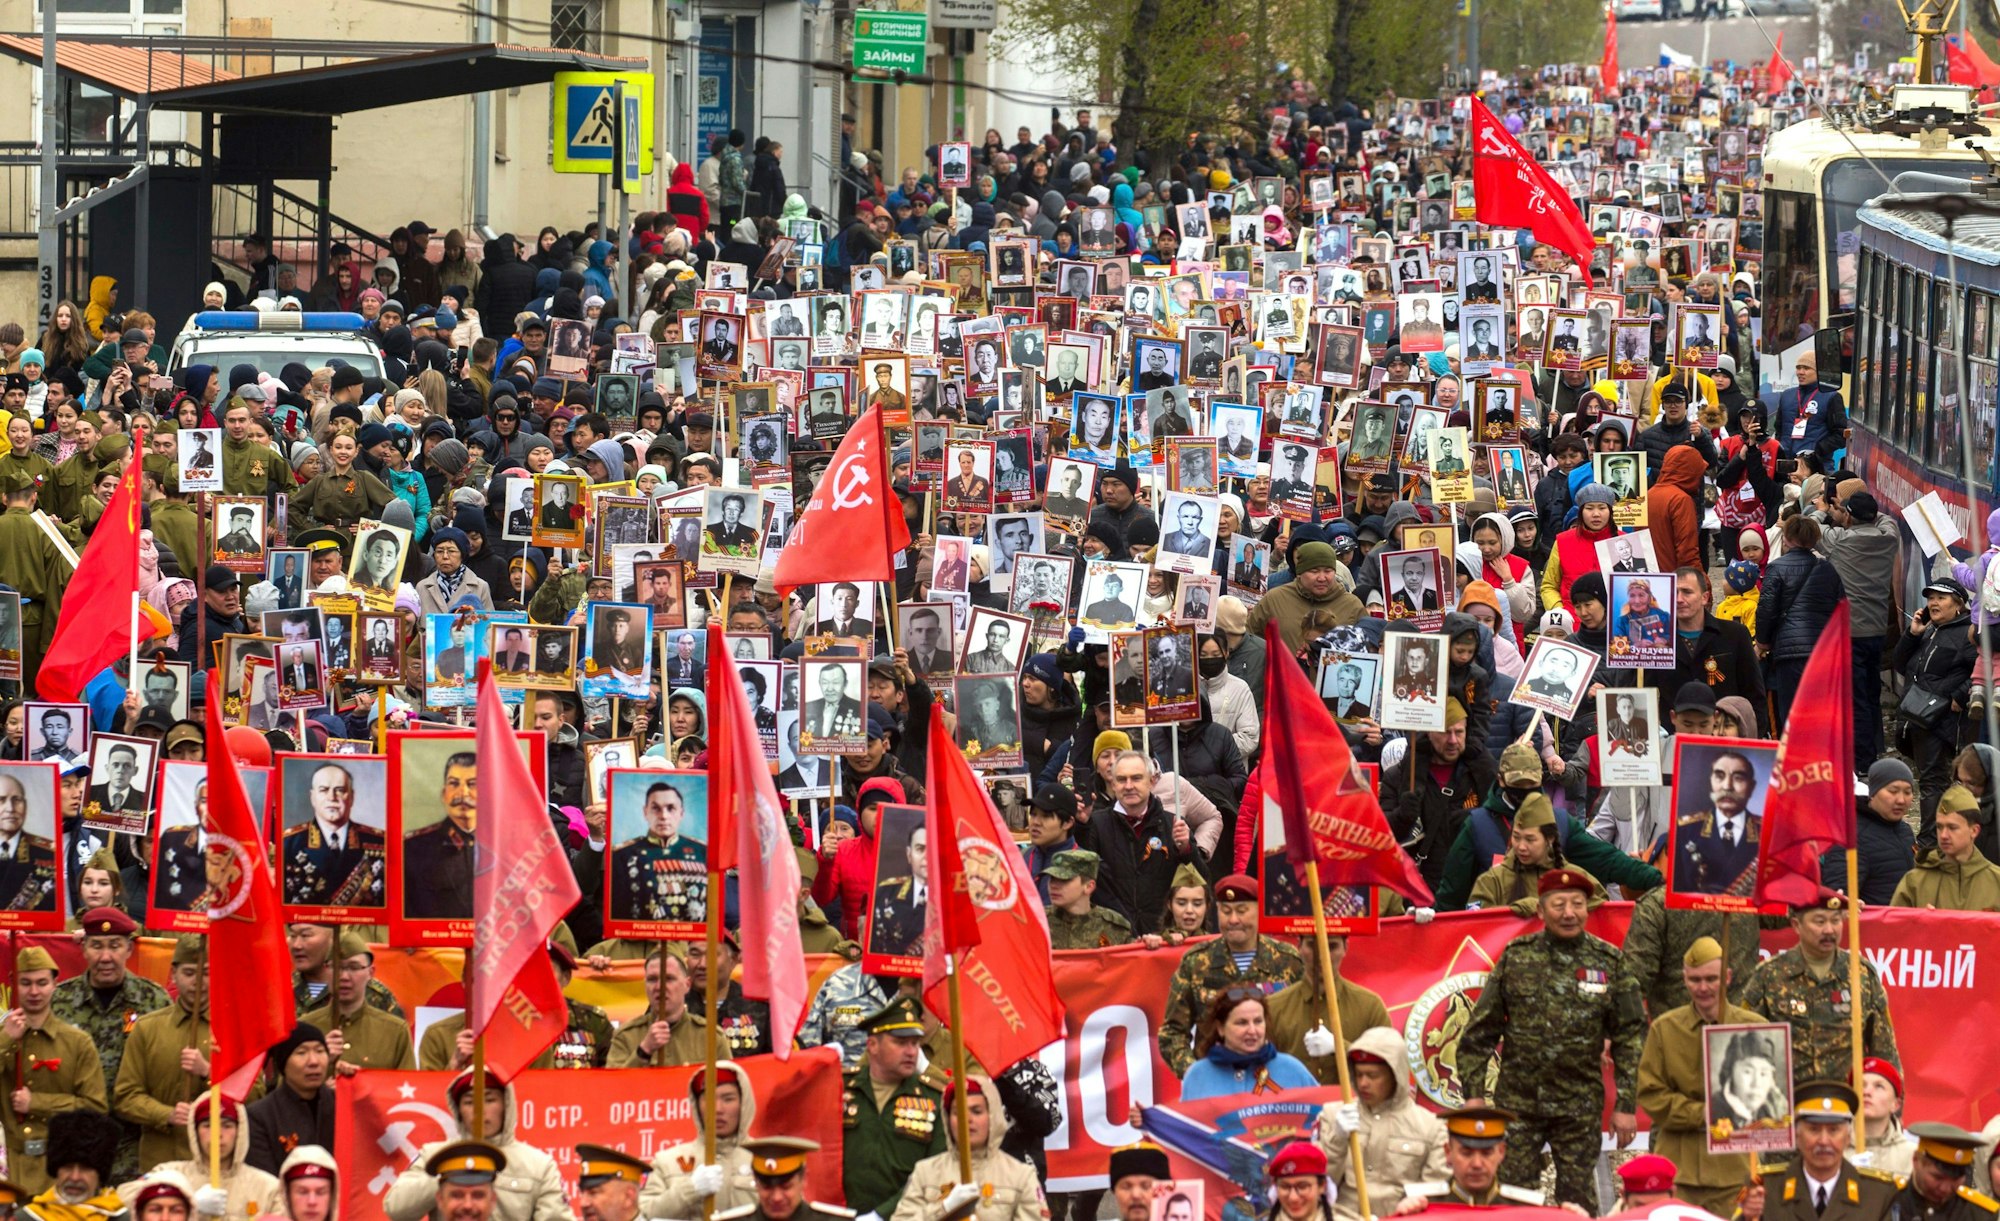 Menschen tragen zum „Tag des Sieges“ am 9. Mai 2022 in Ulan-Ude (Russland) ein Porträt des ehemaligen sowjetischen Führers Josef Stalin sowie Porträts von sowjetischen Führern und Verwandten, die im Zweiten Weltkrieg gekämpft haben. Auch russische und sowjetische Flaggen werden getragen.